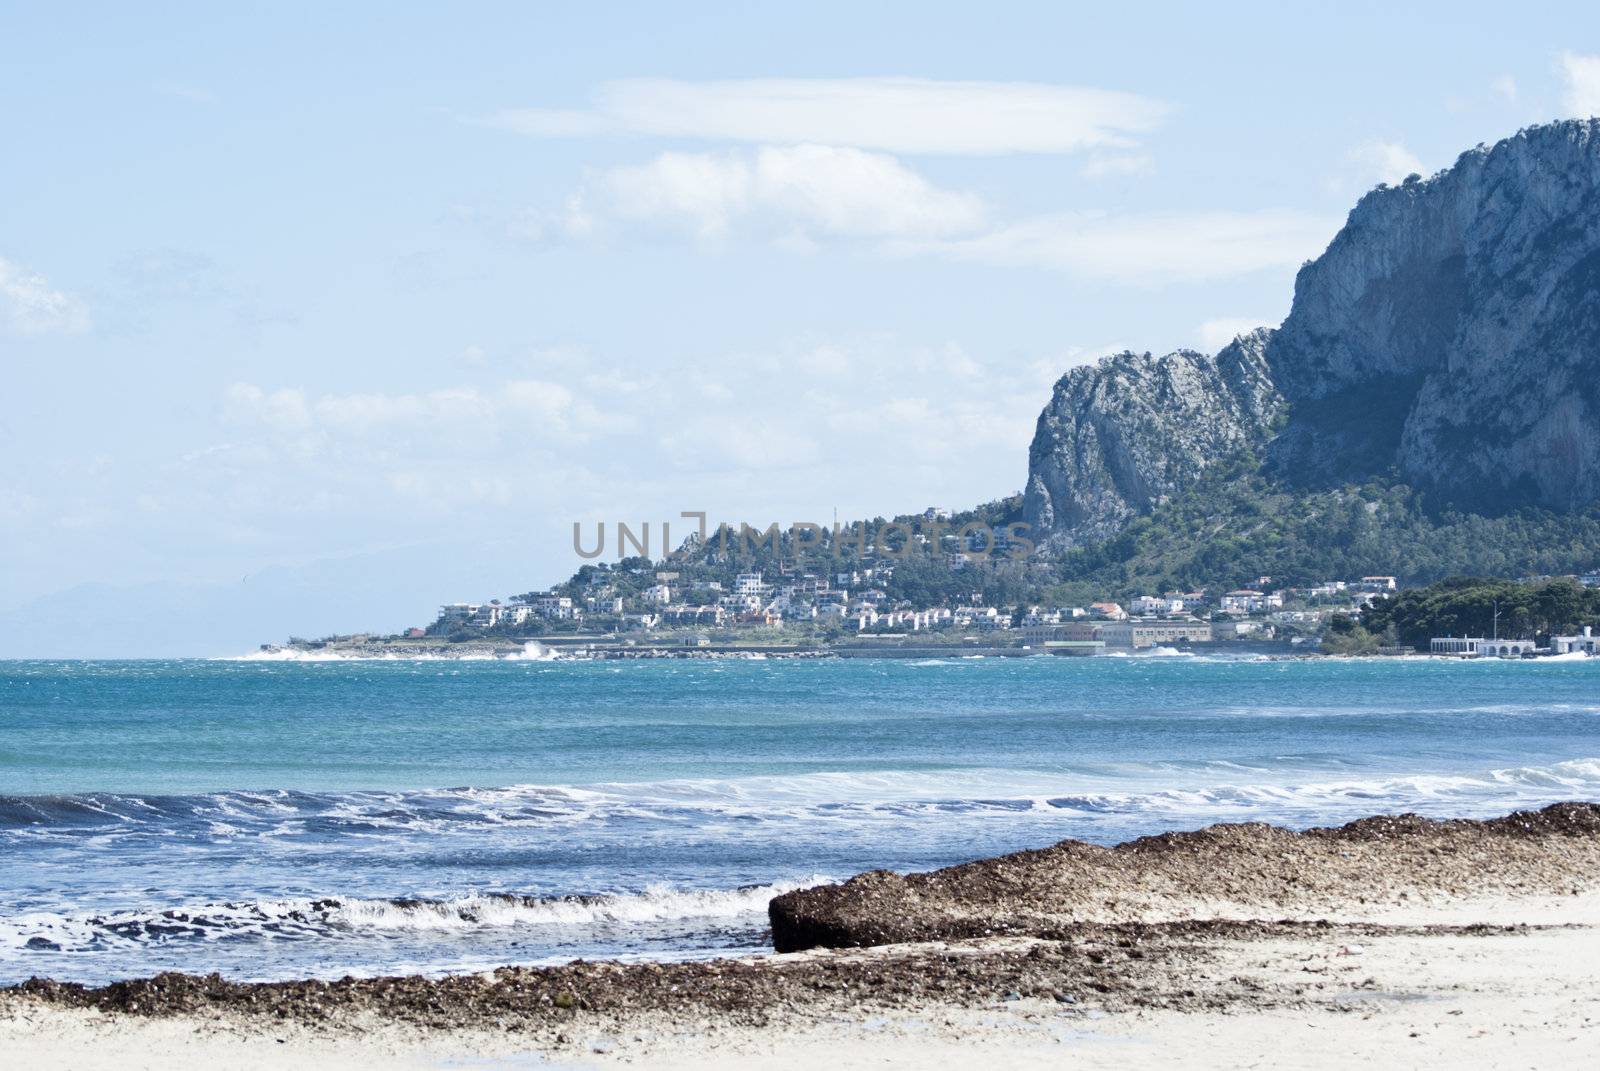 The famous beach of "Mondello" ; in Palermo, Sicily